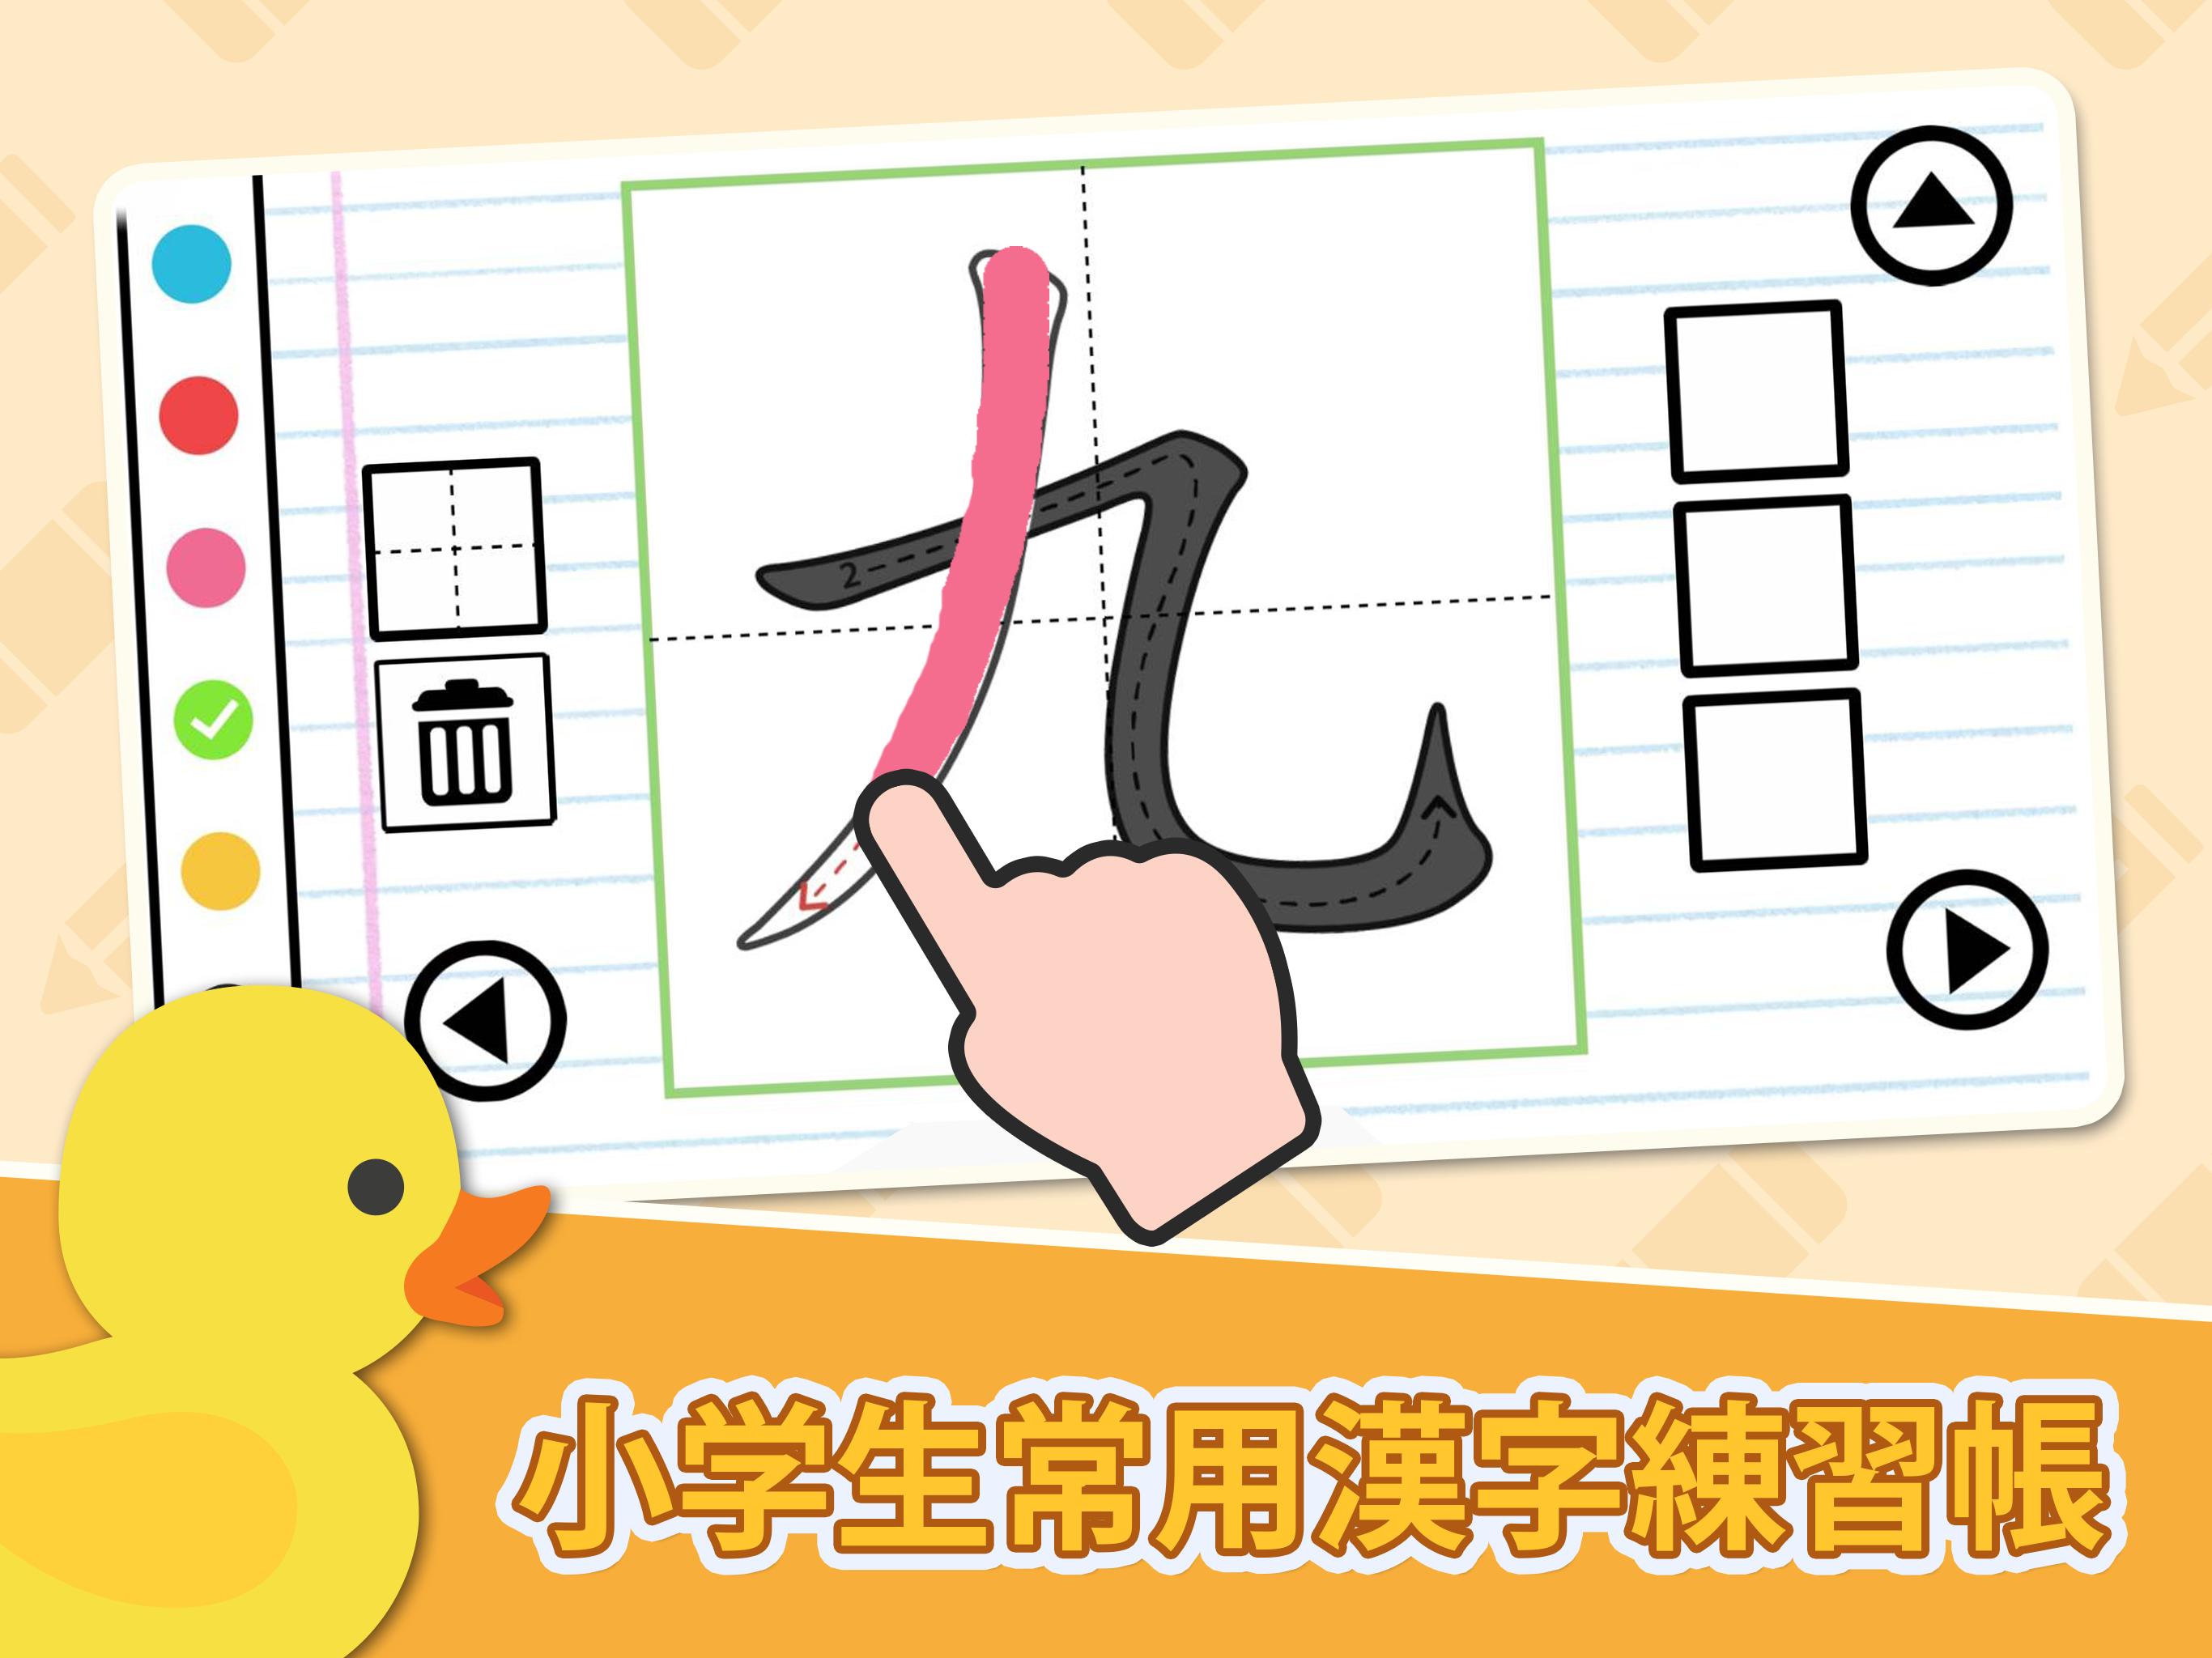 漢字の正しい書き順 筆順 アプリ 常用漢字手書き練習学習用アプリ 漢字検定にも便利無料筆順勉強アプリ For Android Apk Download